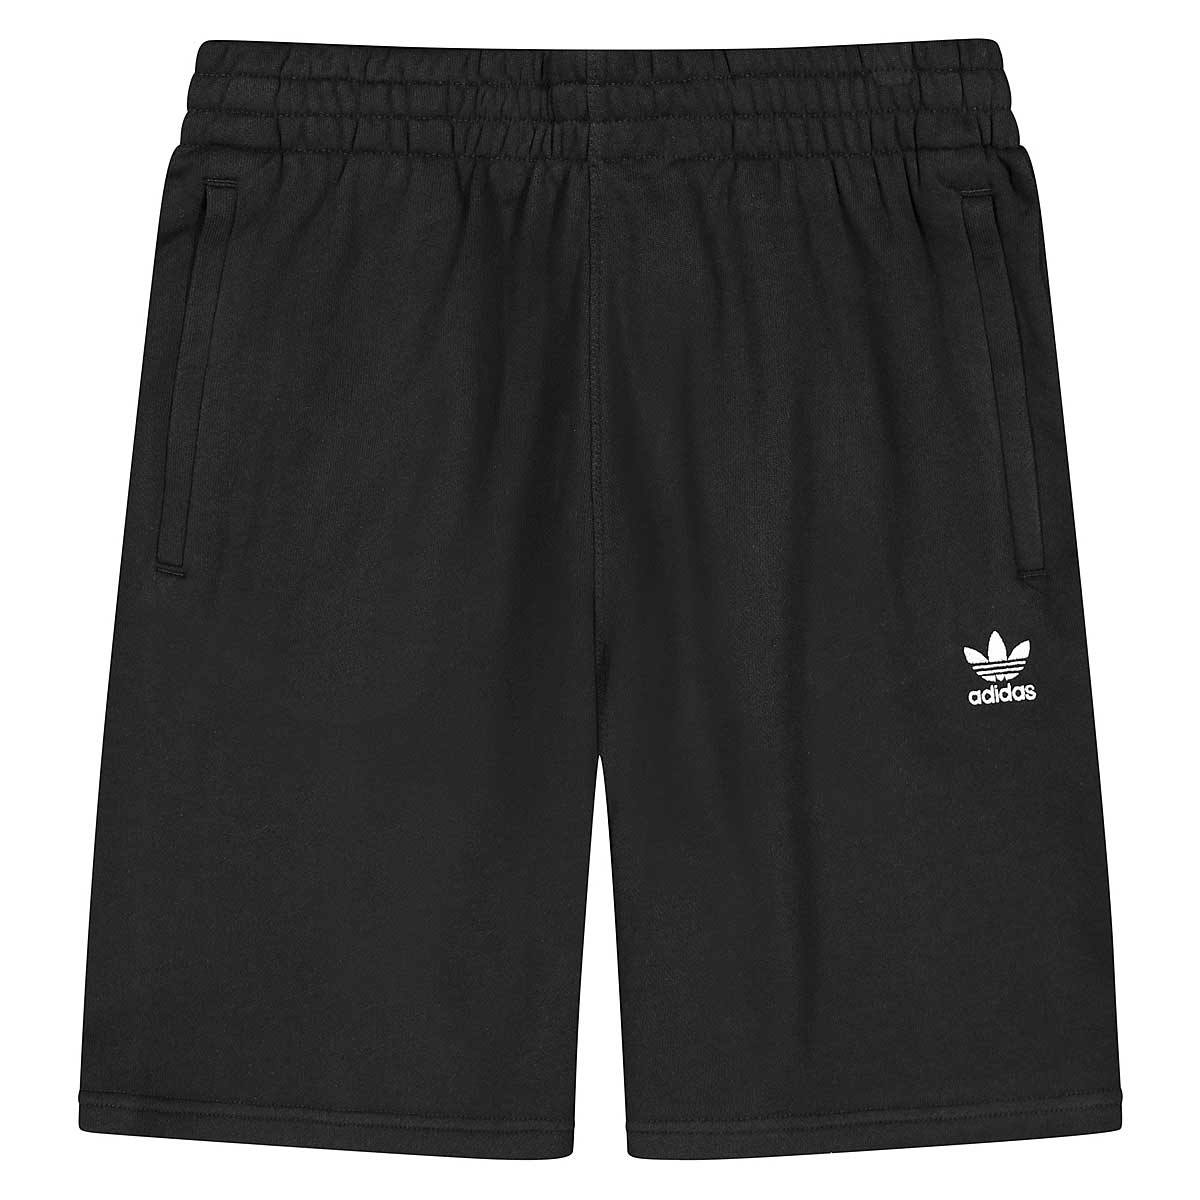 Adidas Originals Essential Short, Black